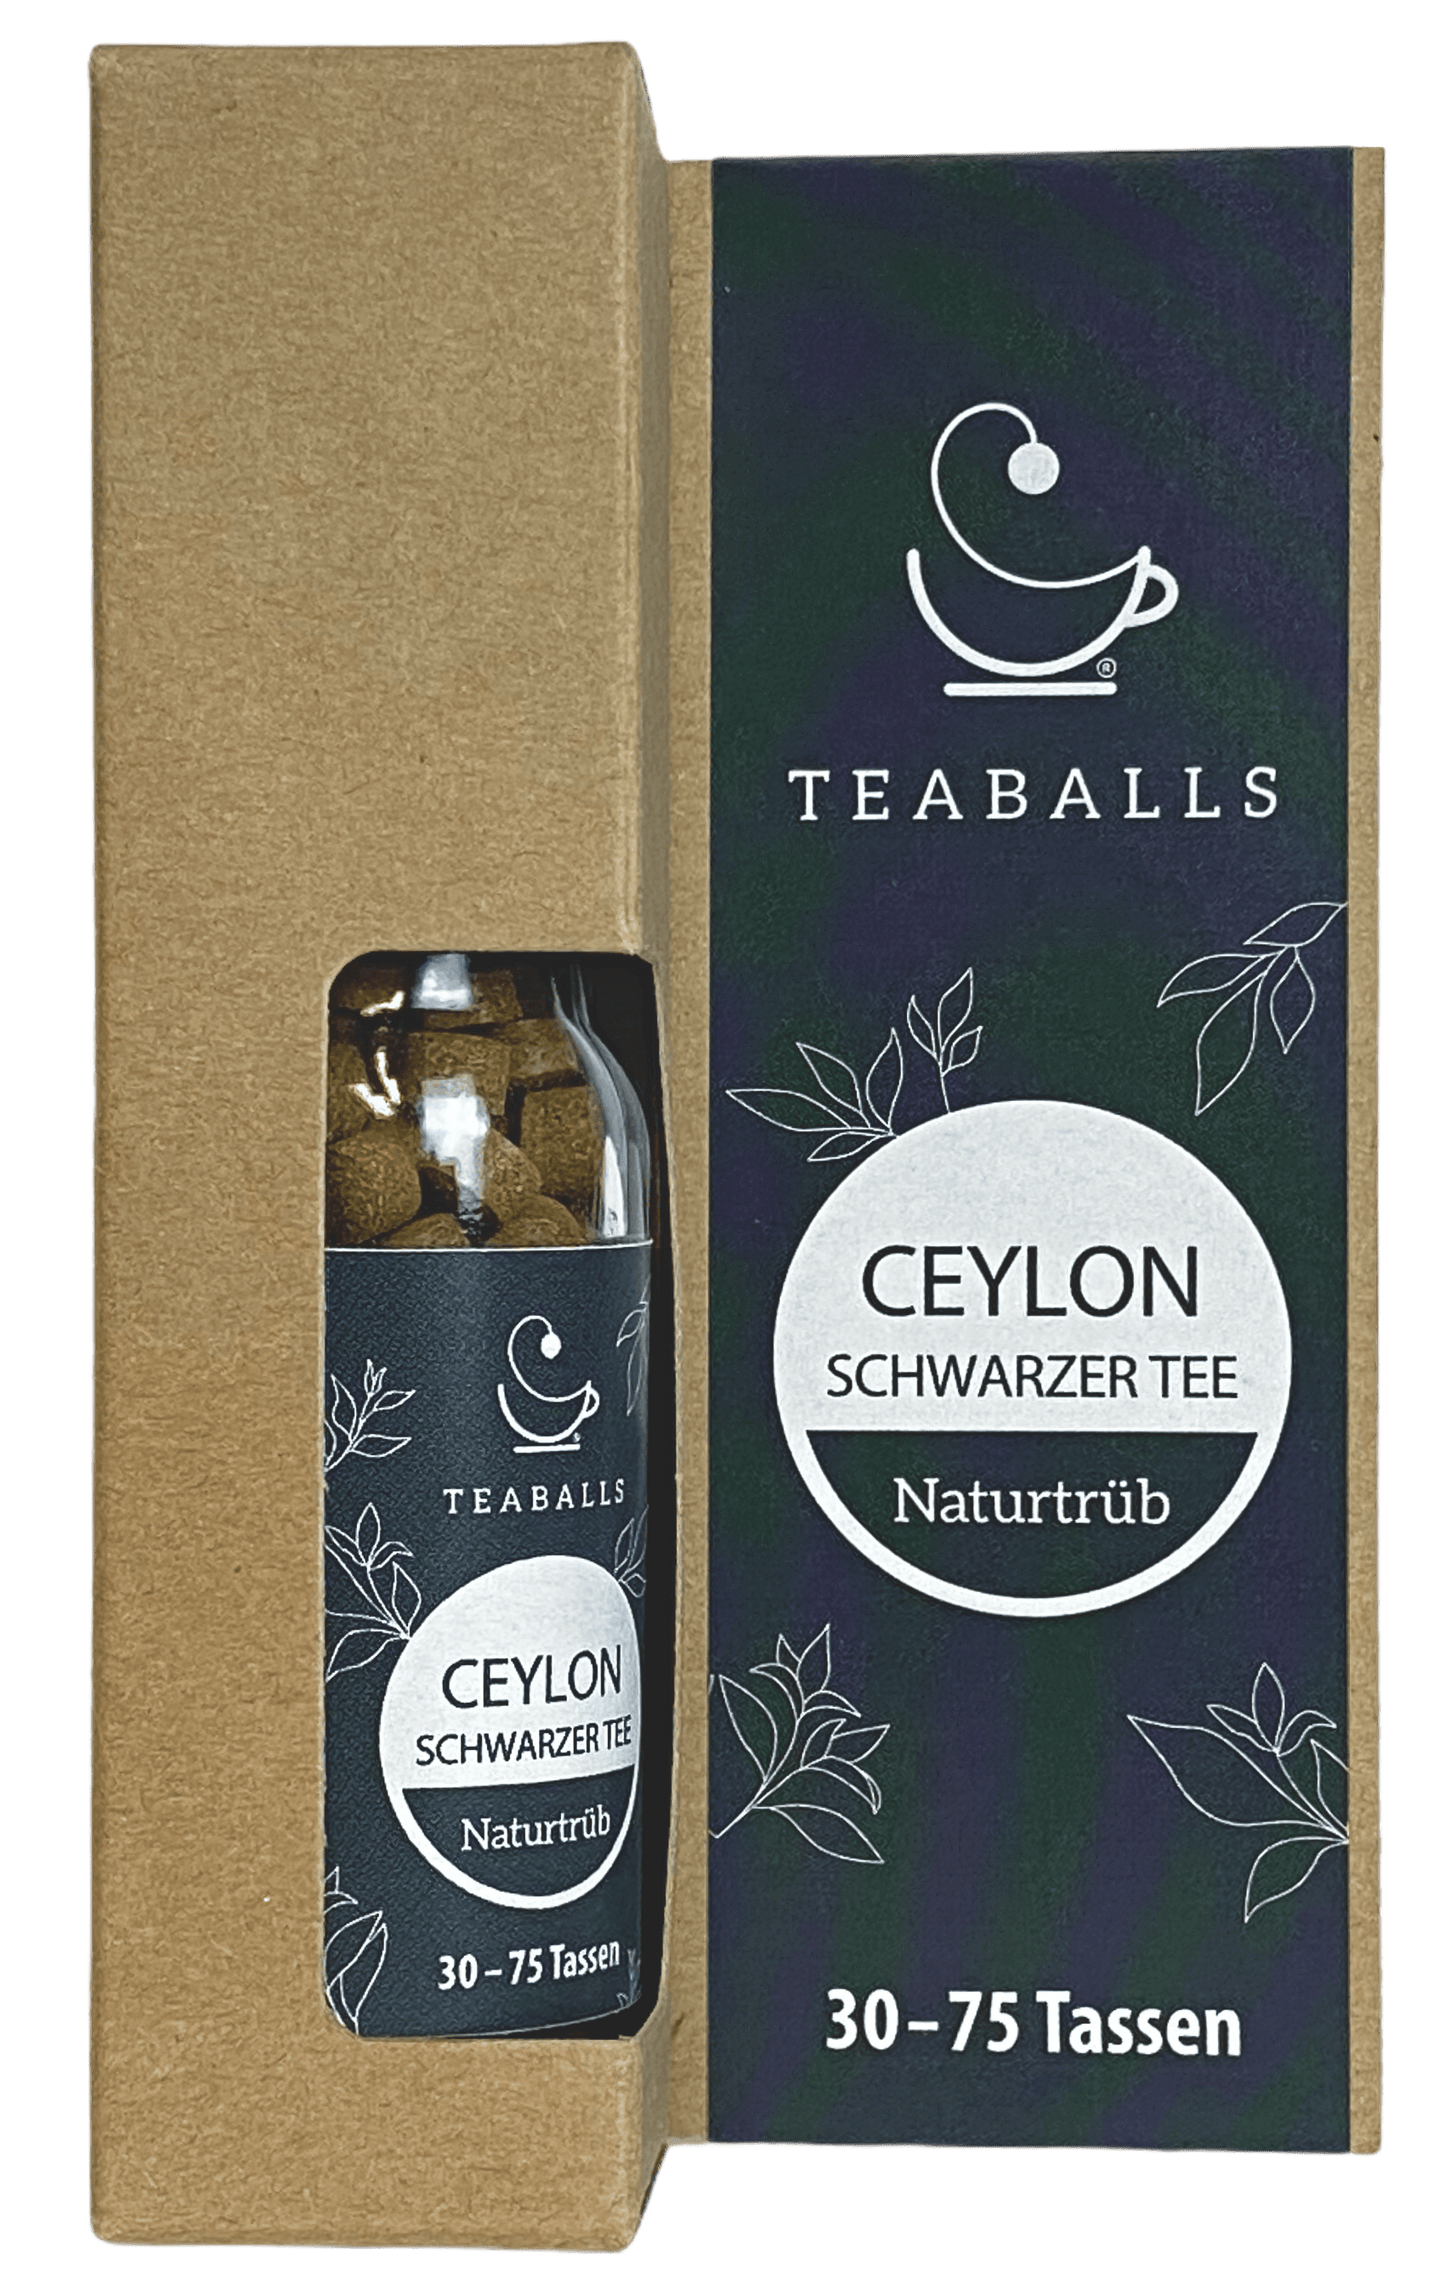 TEABALLS – Ceylon schwarzer Tee | Naturtrüb | 30-75 Tassen - MYTEACOFFEE.COM | Tee und Kaffee Online bestellen | TEABALLS | BELMIO | DAMATH